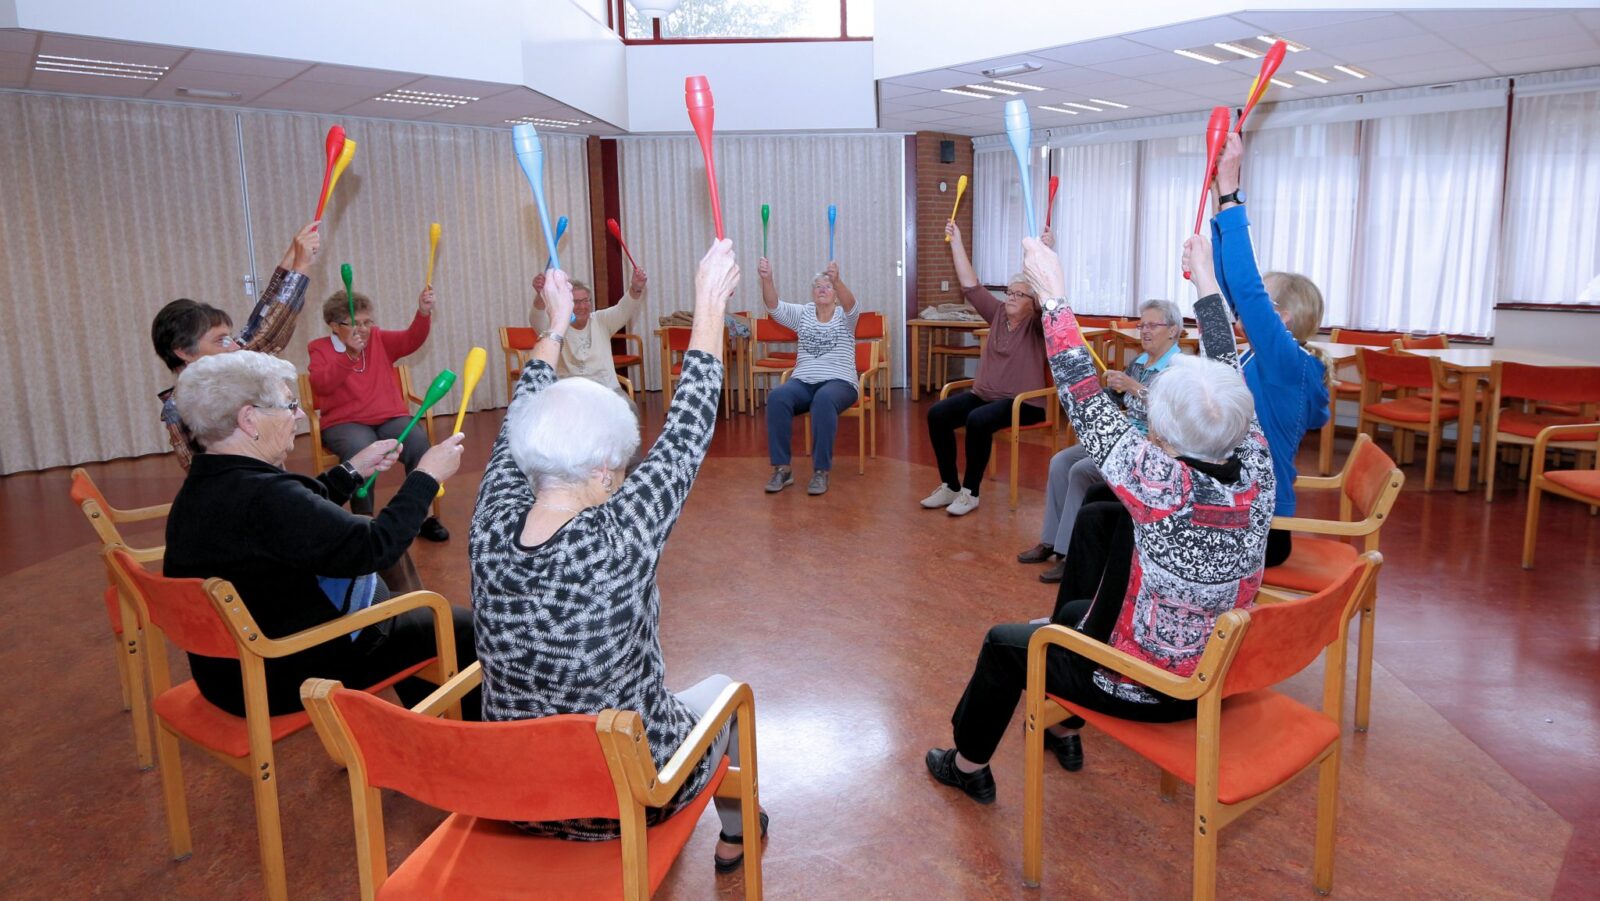 Verbazingwekkend Bewegen voor ouderen, 'blijf fit en kom bewegen' | RTV Katwijk SH-43